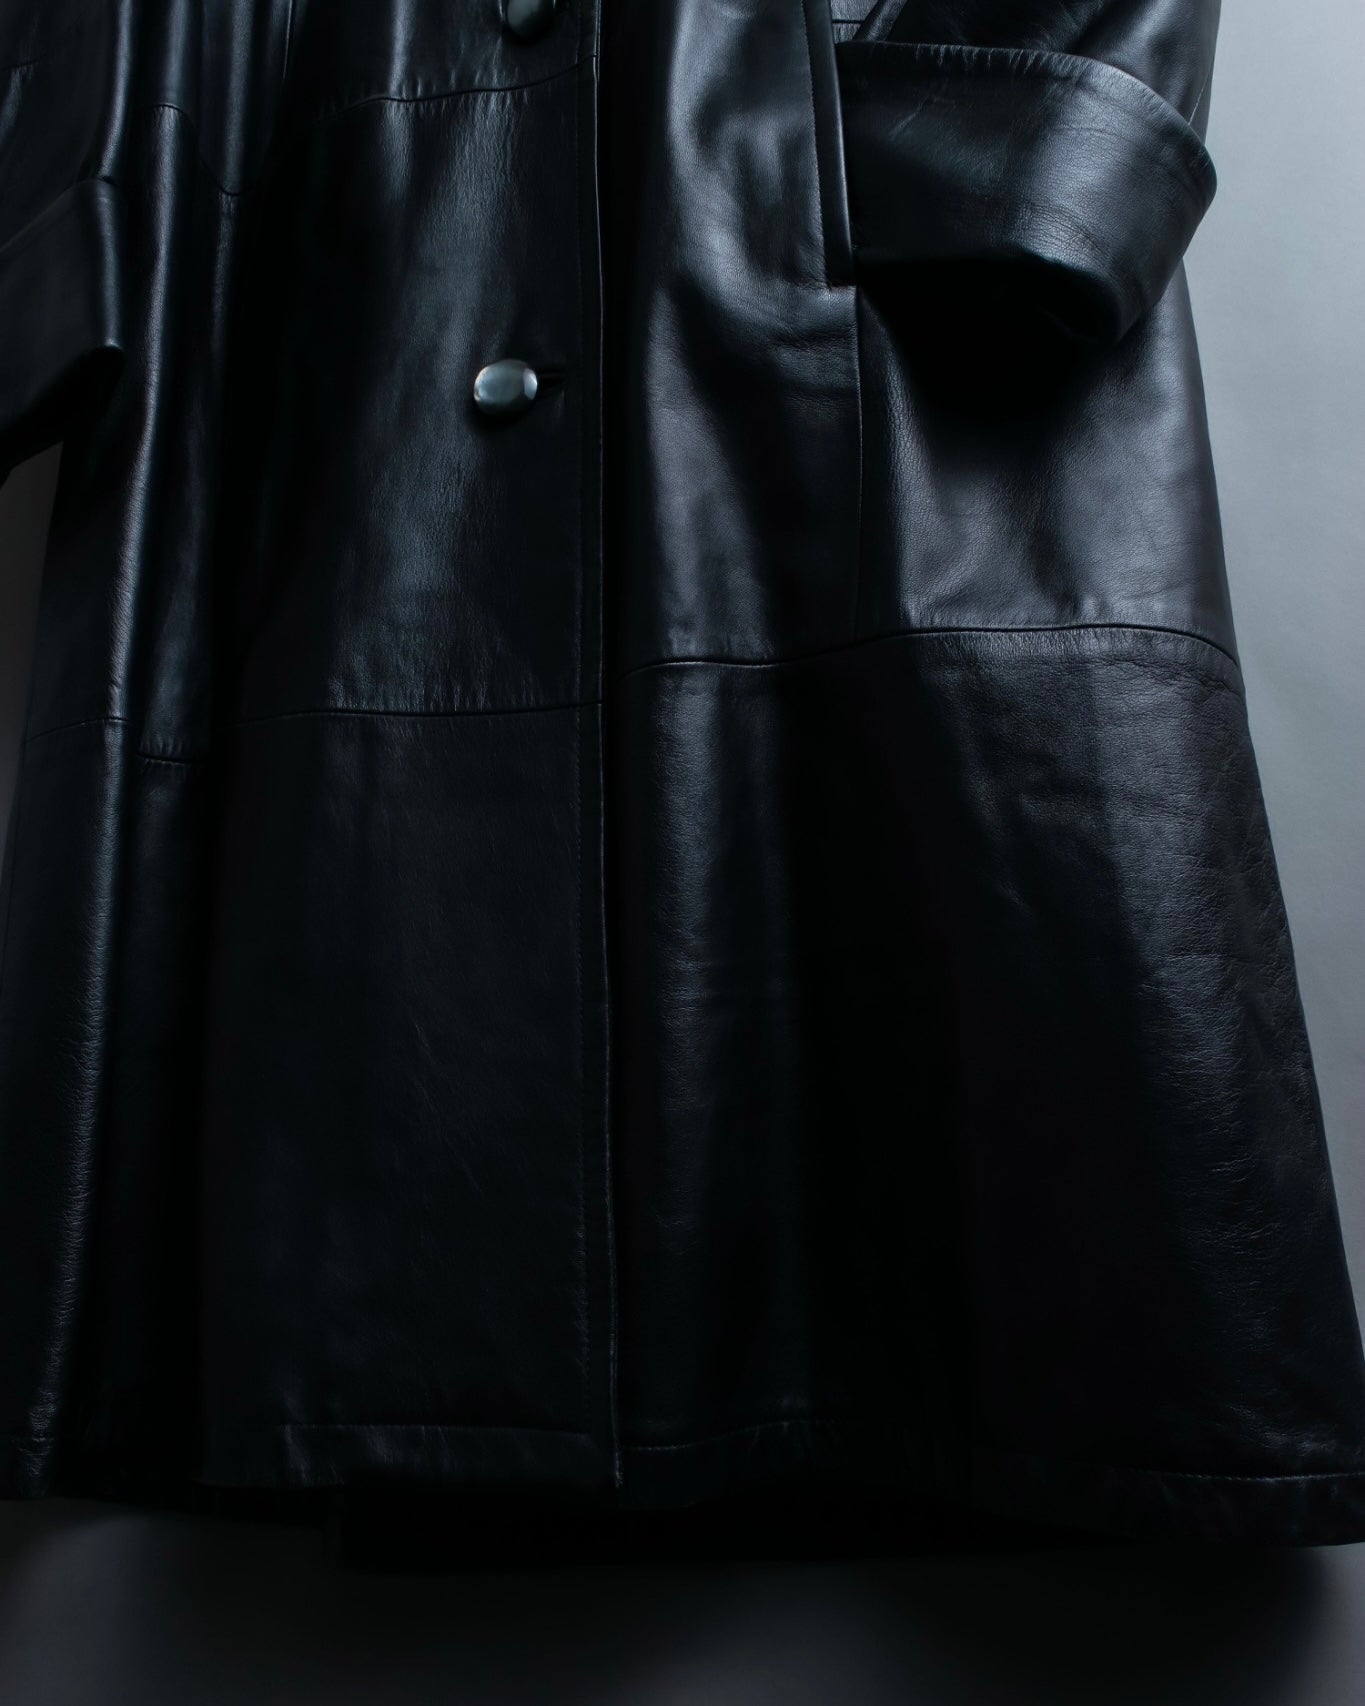 "ITALY VERA PELLE" round fur leather coat